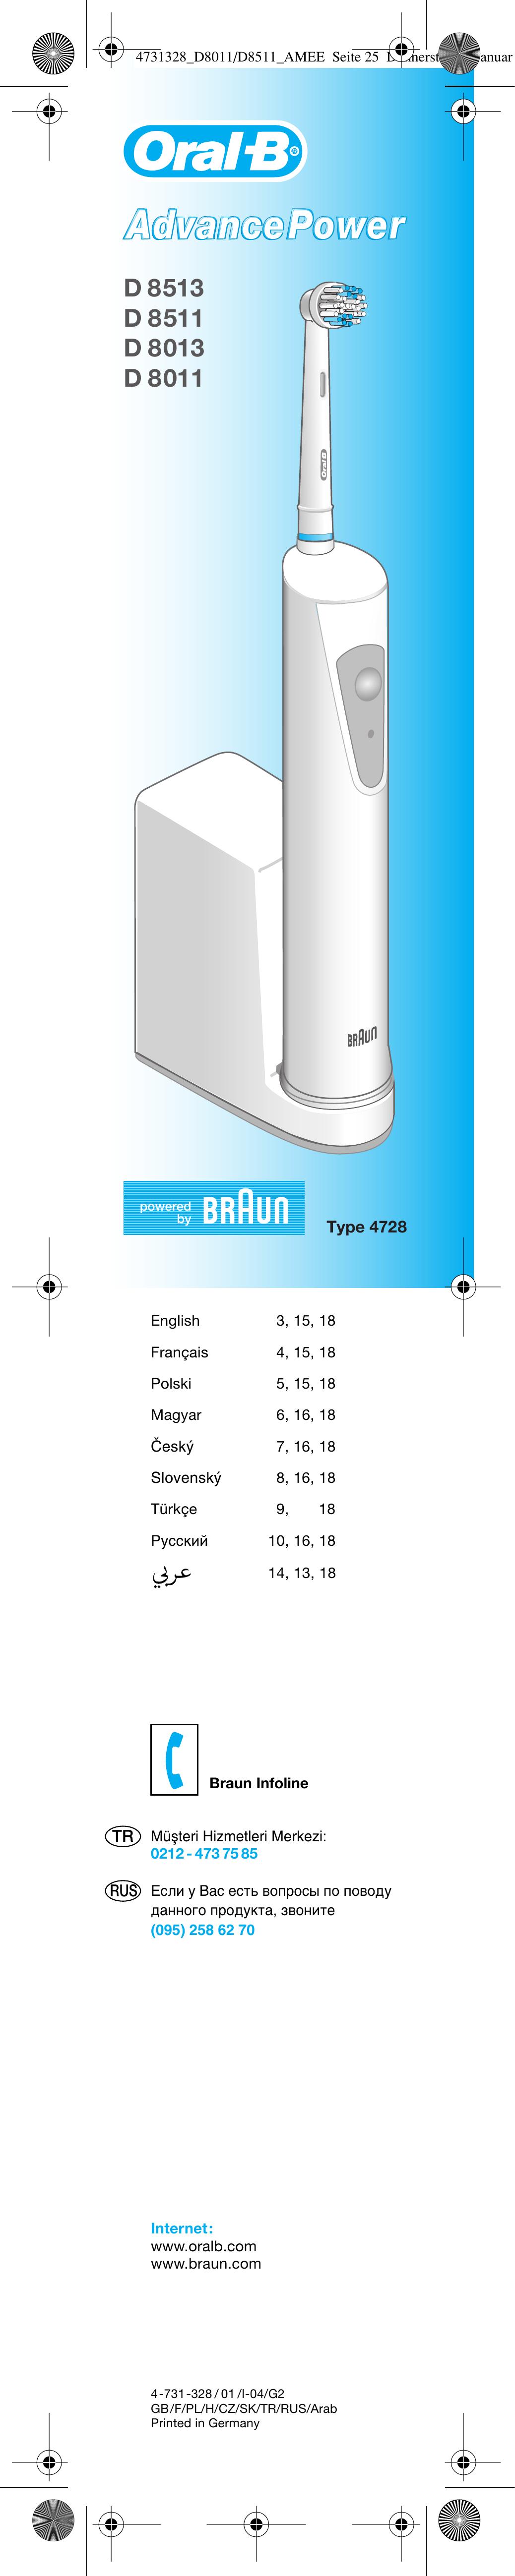 Braun D 8511 Electric Toothbrush User Manual